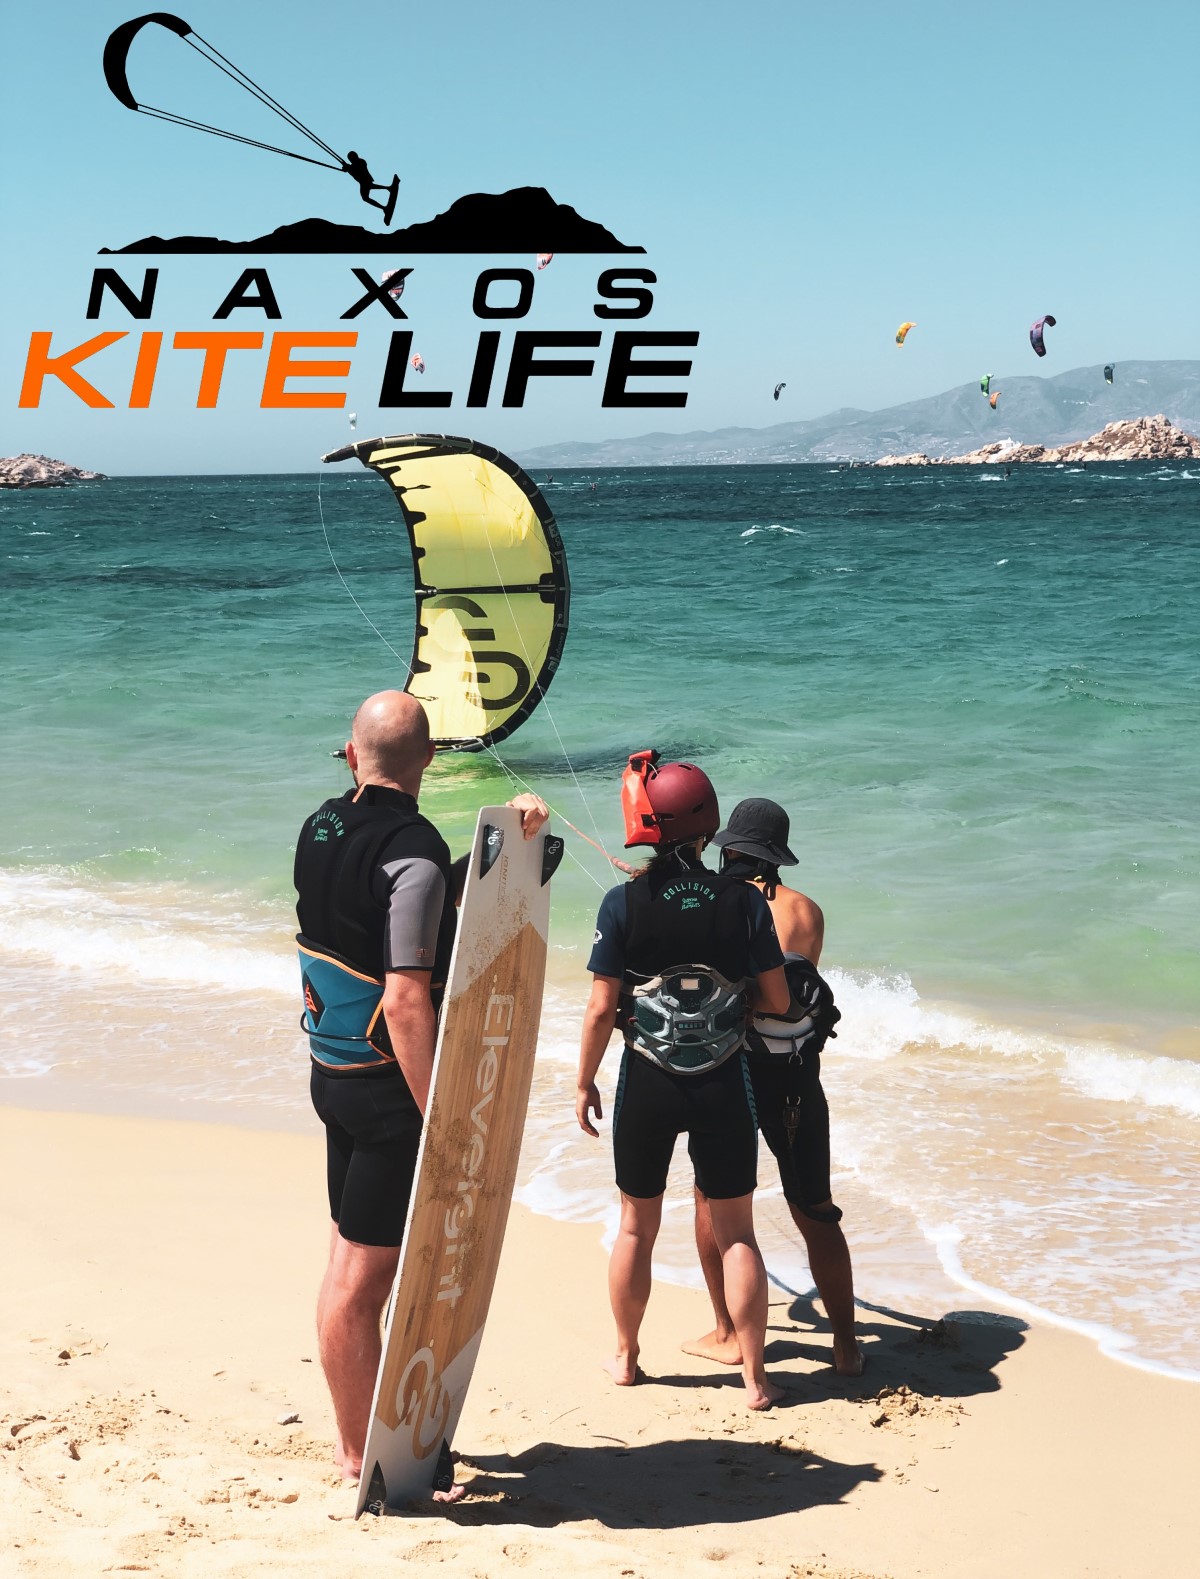 Naxos kitelife